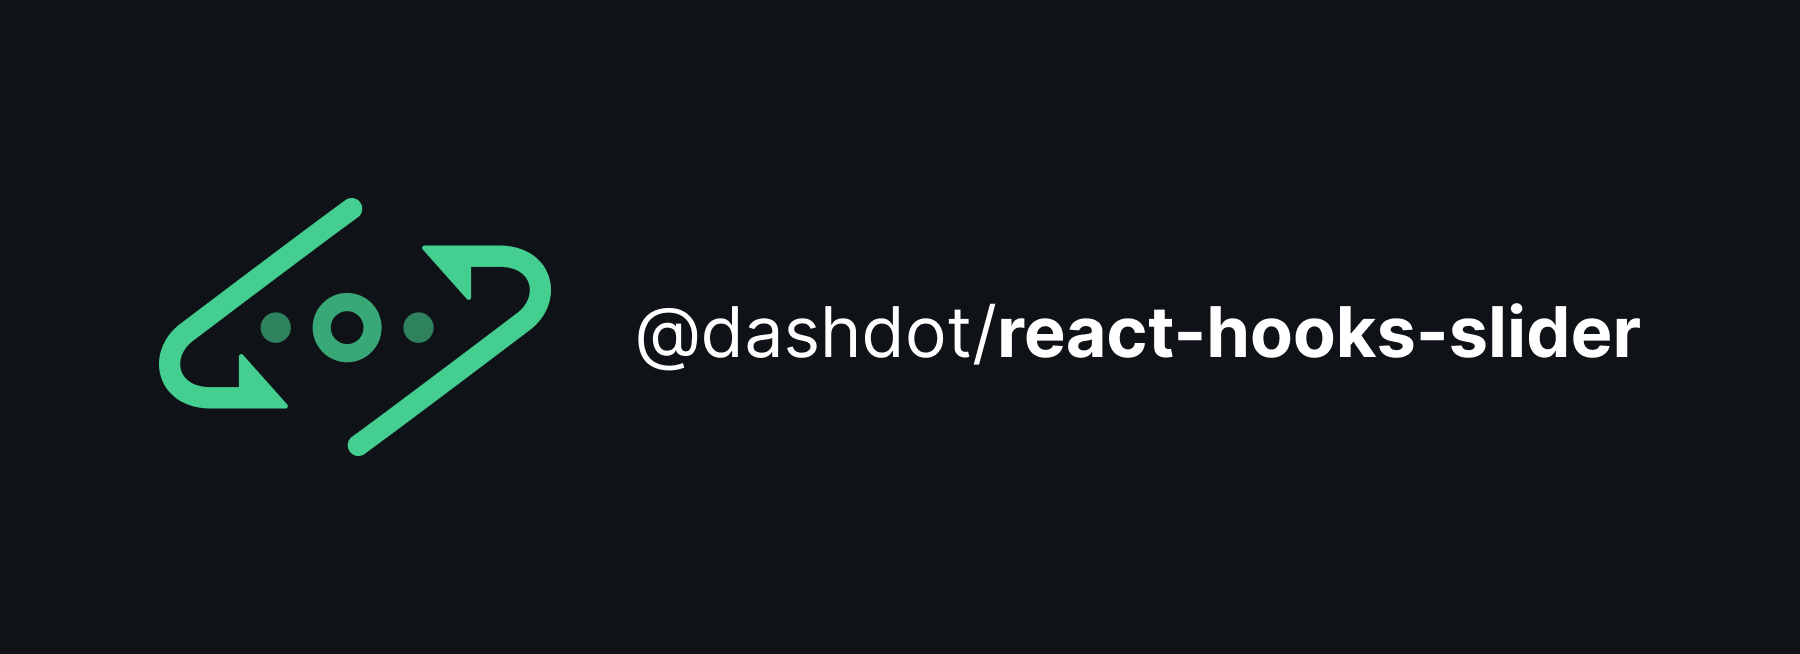 @dashdot/react-hooks-slider